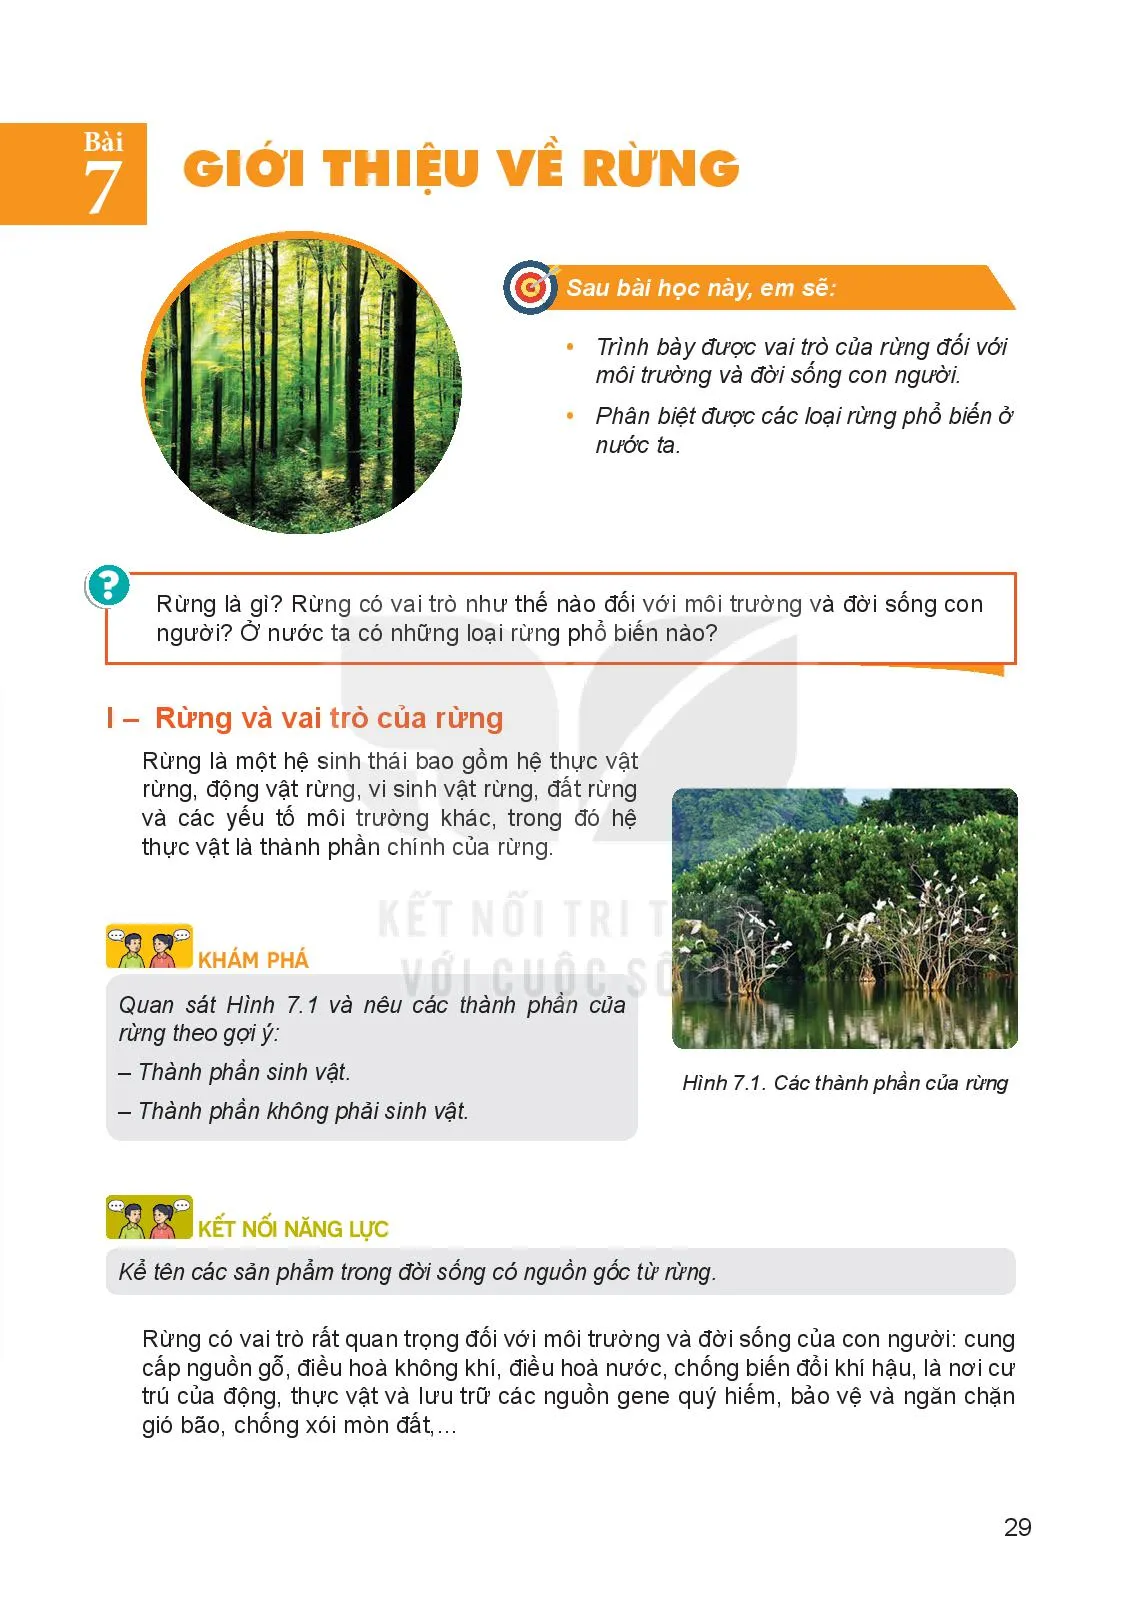 Bài 7. Giới thiệu về rừng